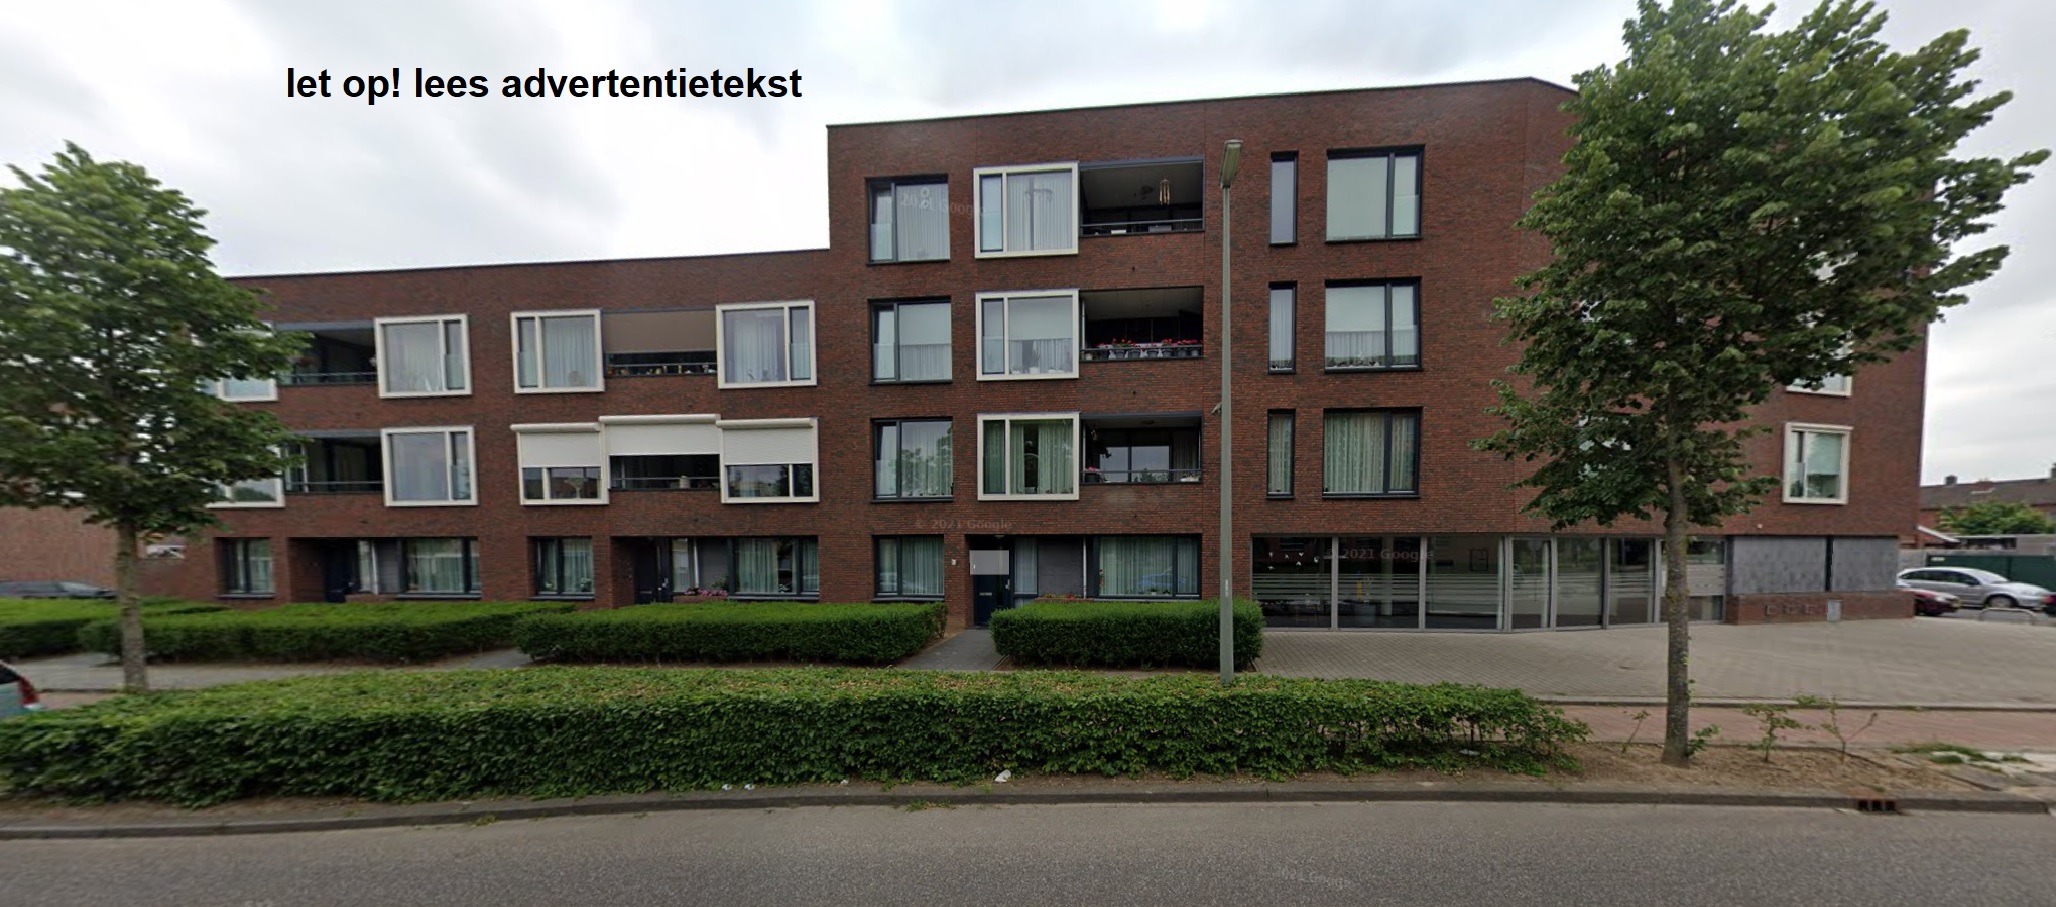 Karel Doormanstraat 85